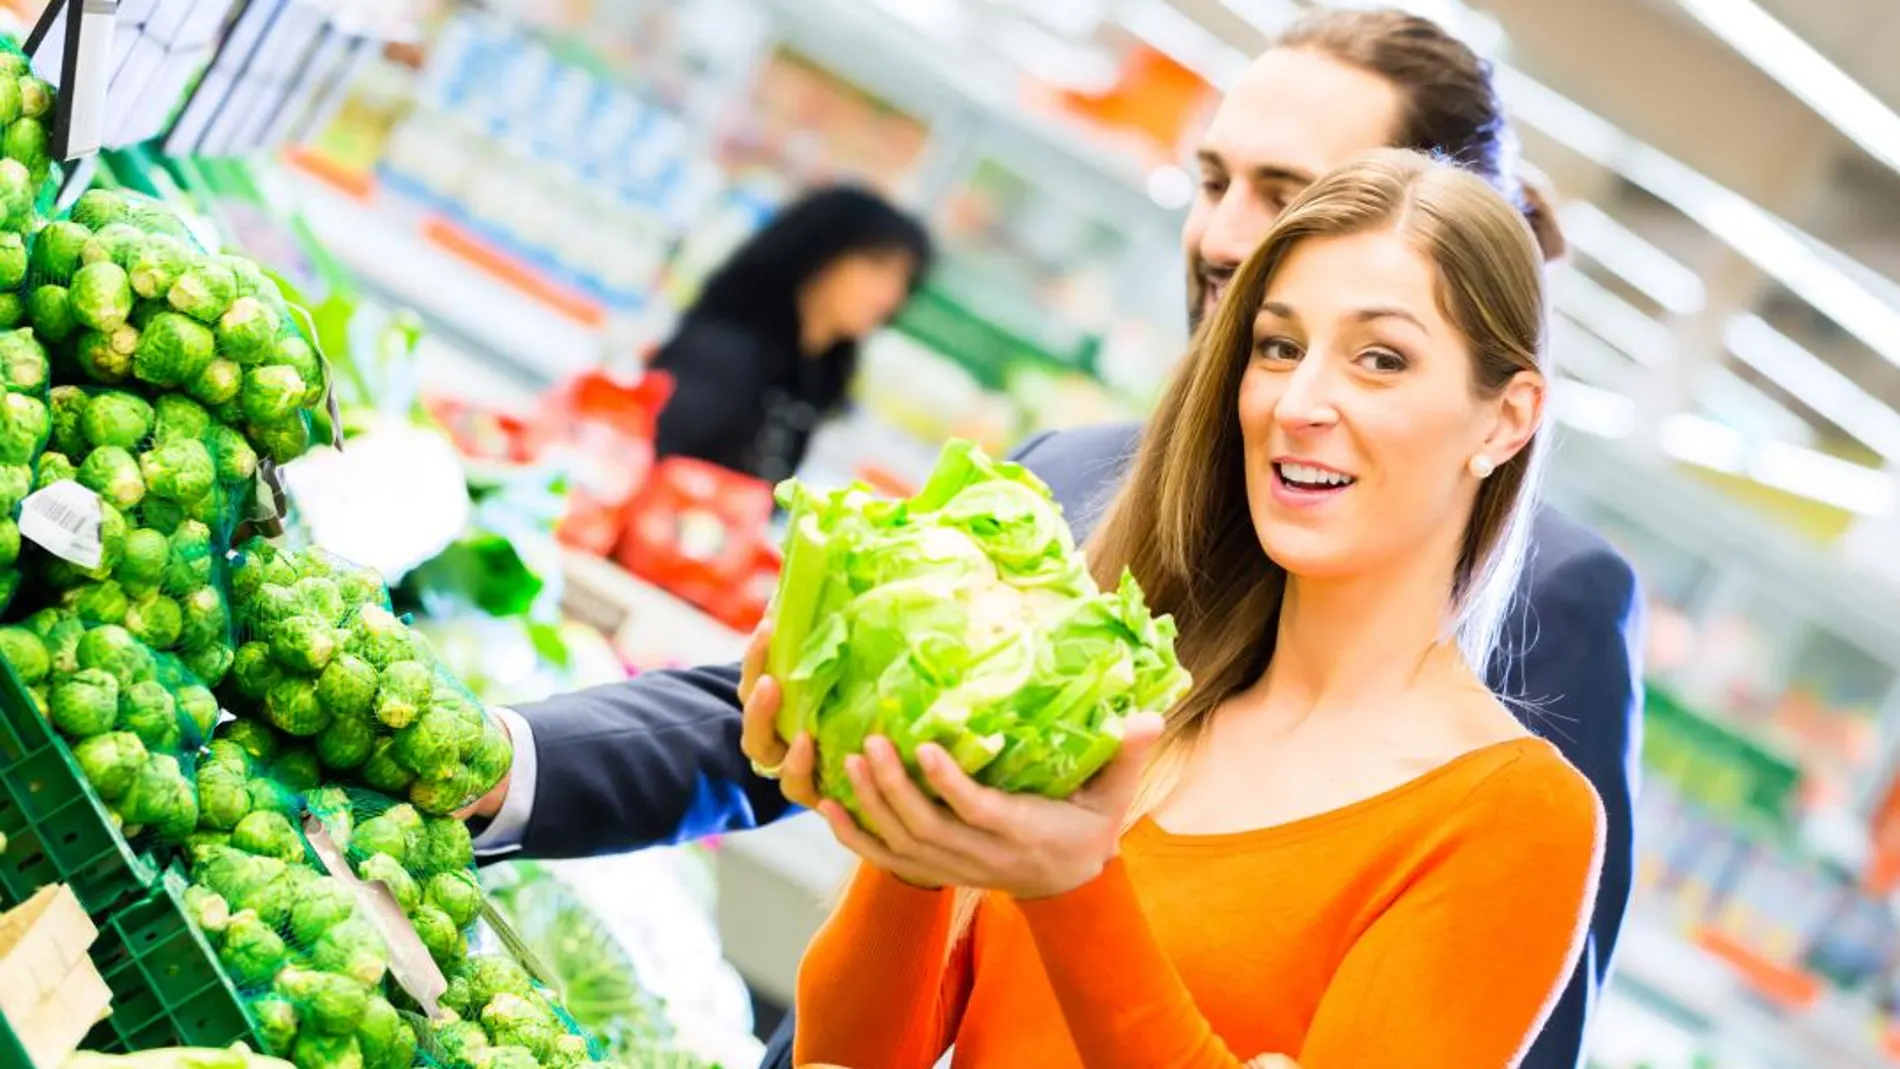 Hacer la compra y ahorrar con cabeza es cuestión de tiempo, organización y conocer los precios de los diferentes supermercados